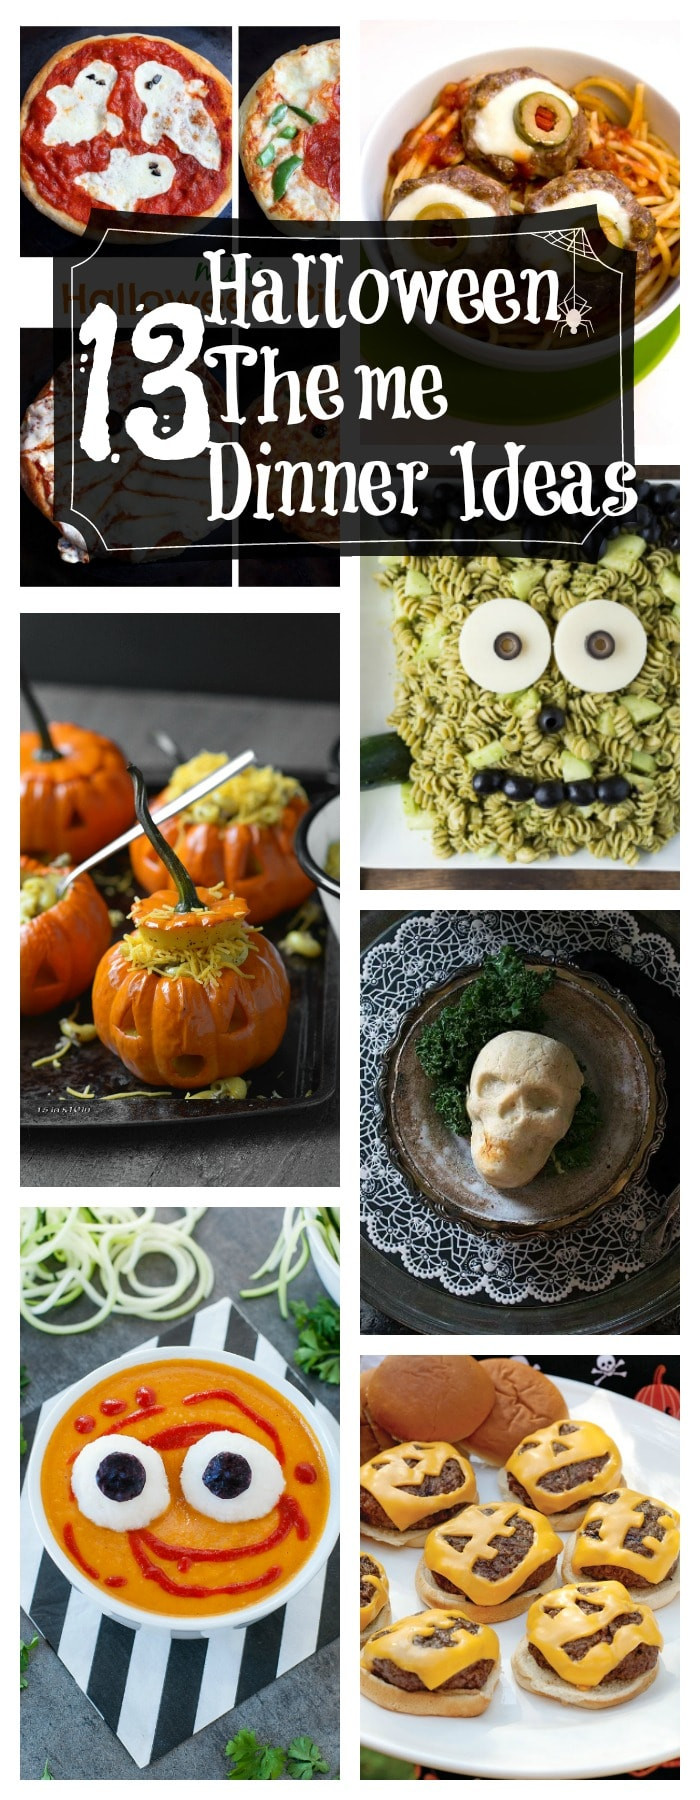 Halloween Themed Dinners
 13 Healthy Halloween Themed Dinner Ideas